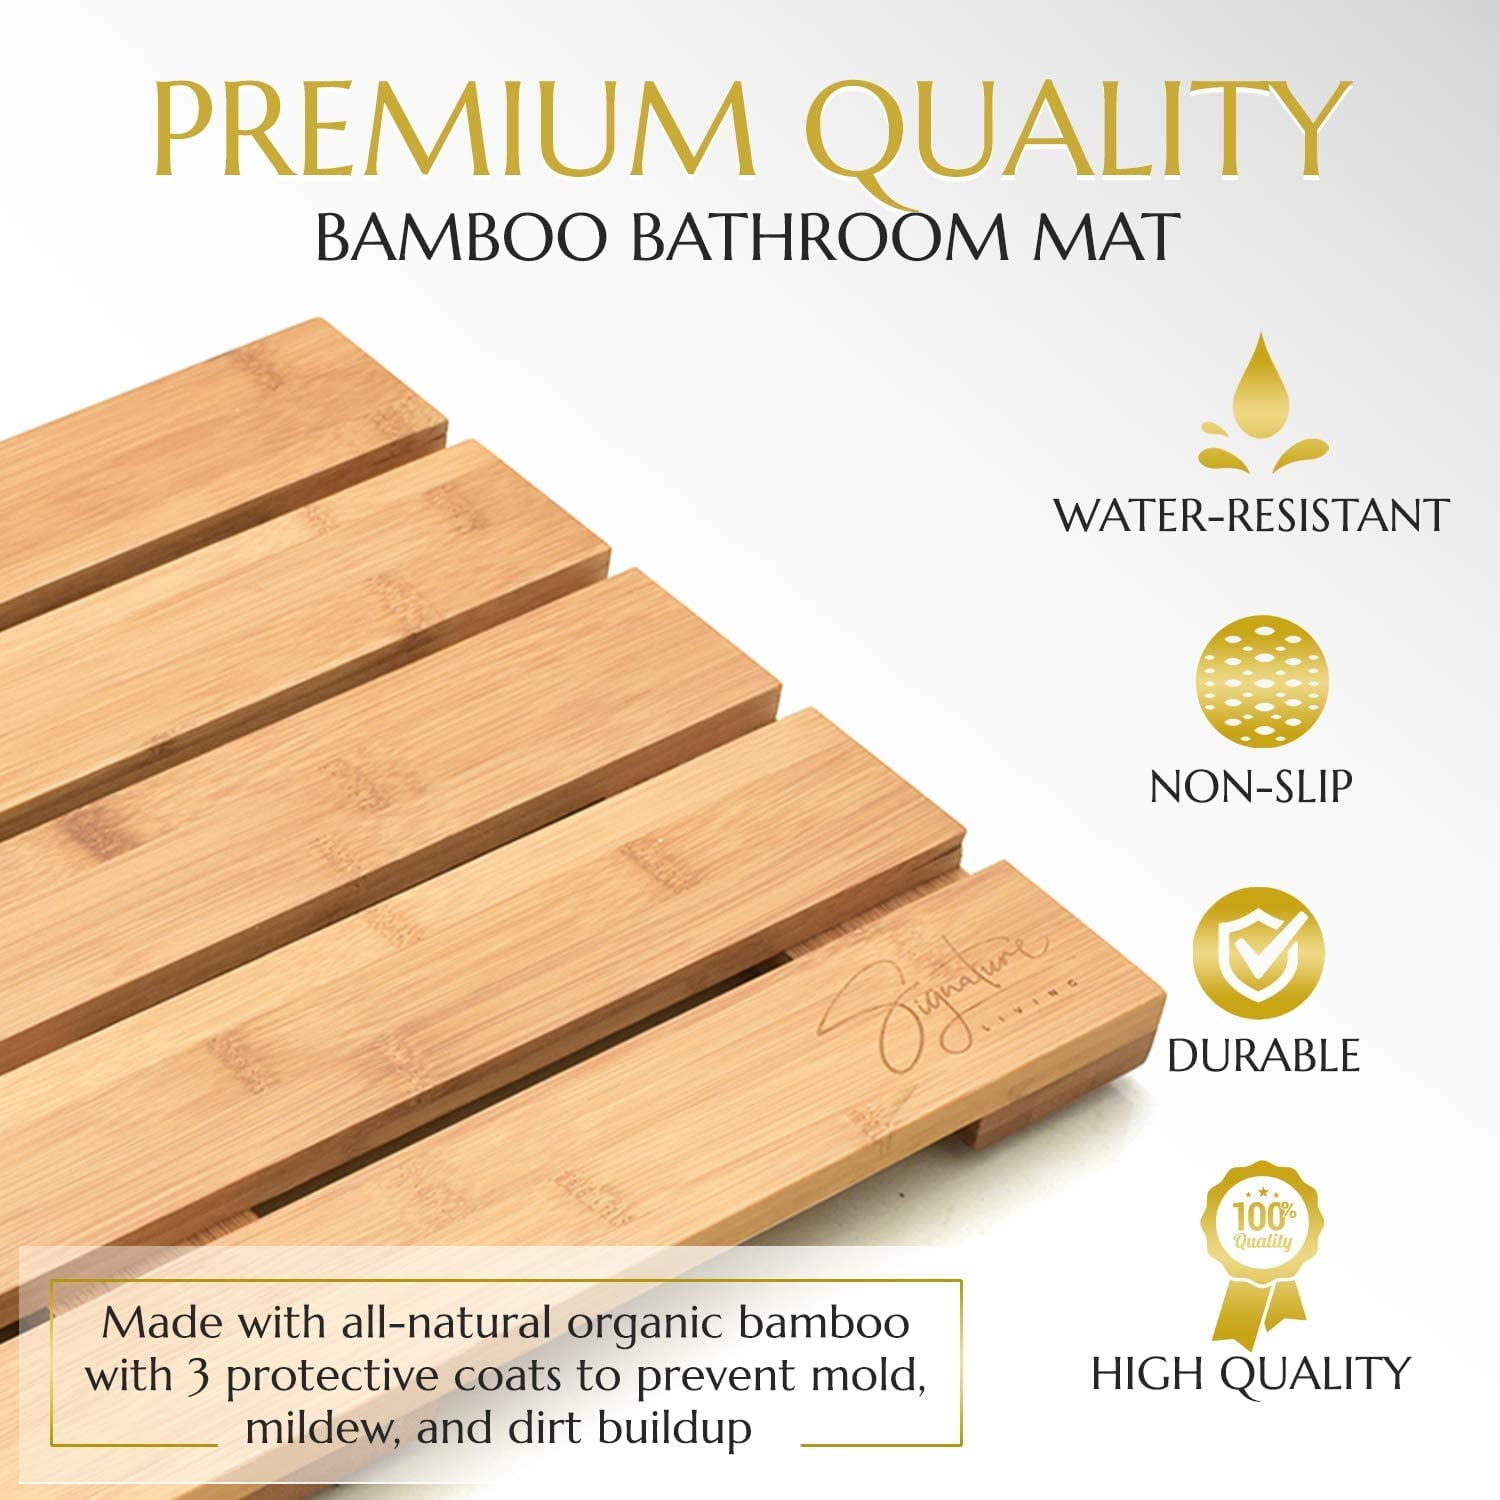 Do Bamboo Bath Mats Get Moldy? How To Clean Bamboo Bath Mat?